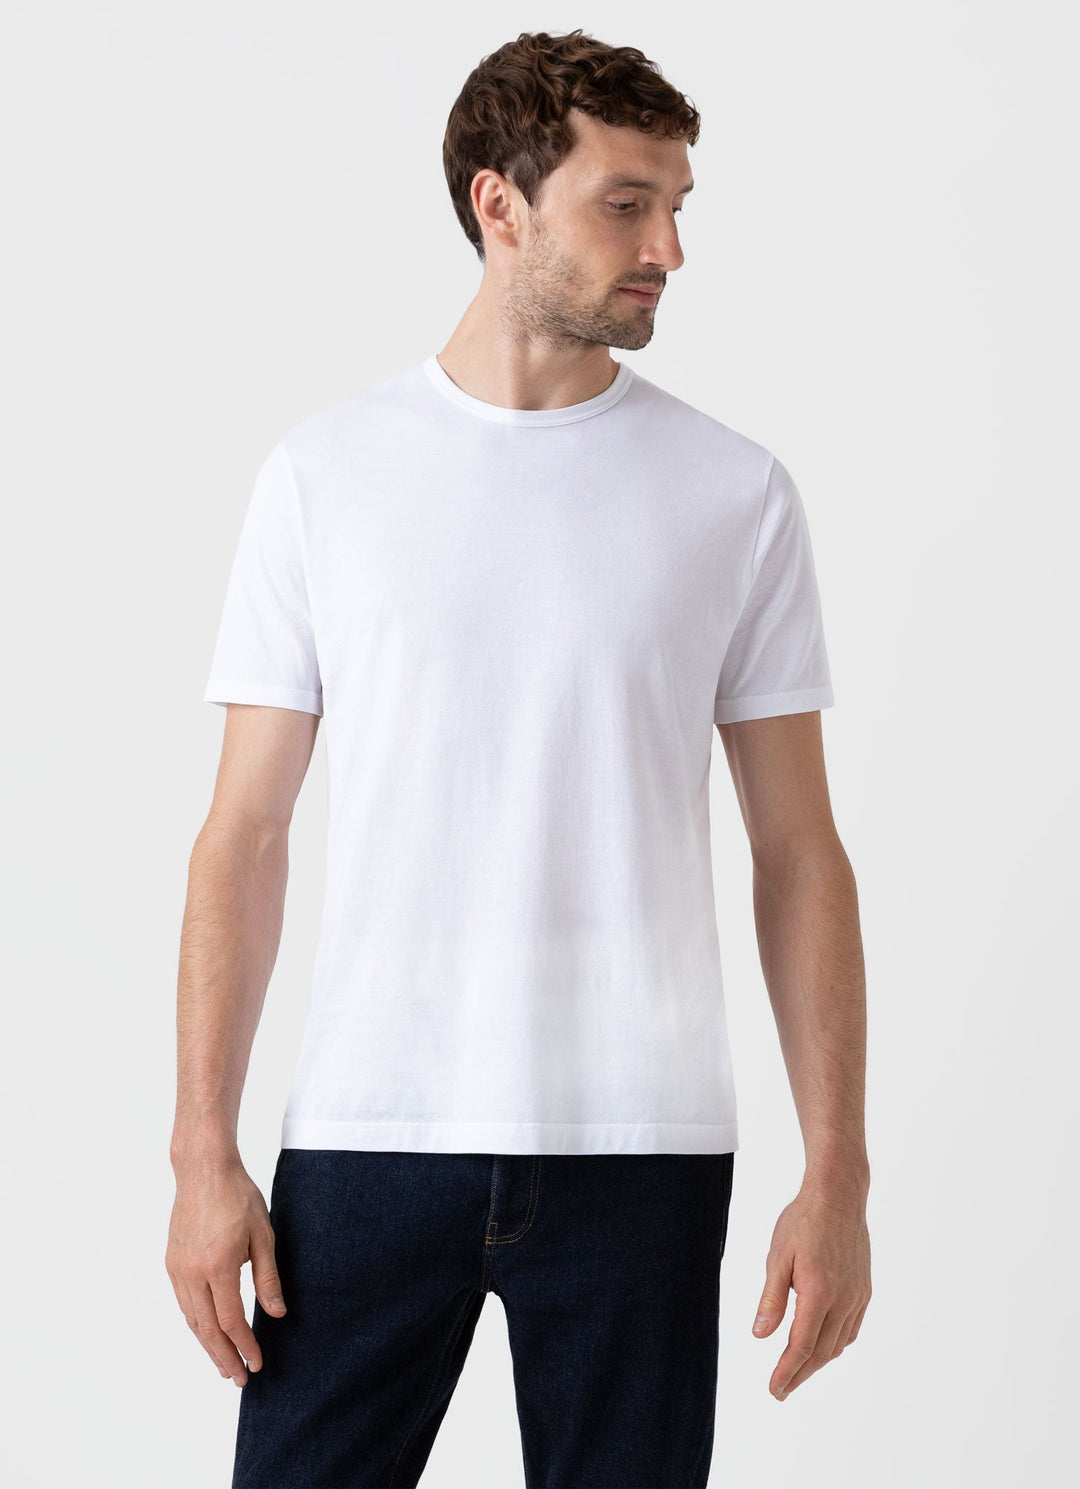 Men’s Luxury T-shirts | Sunspel